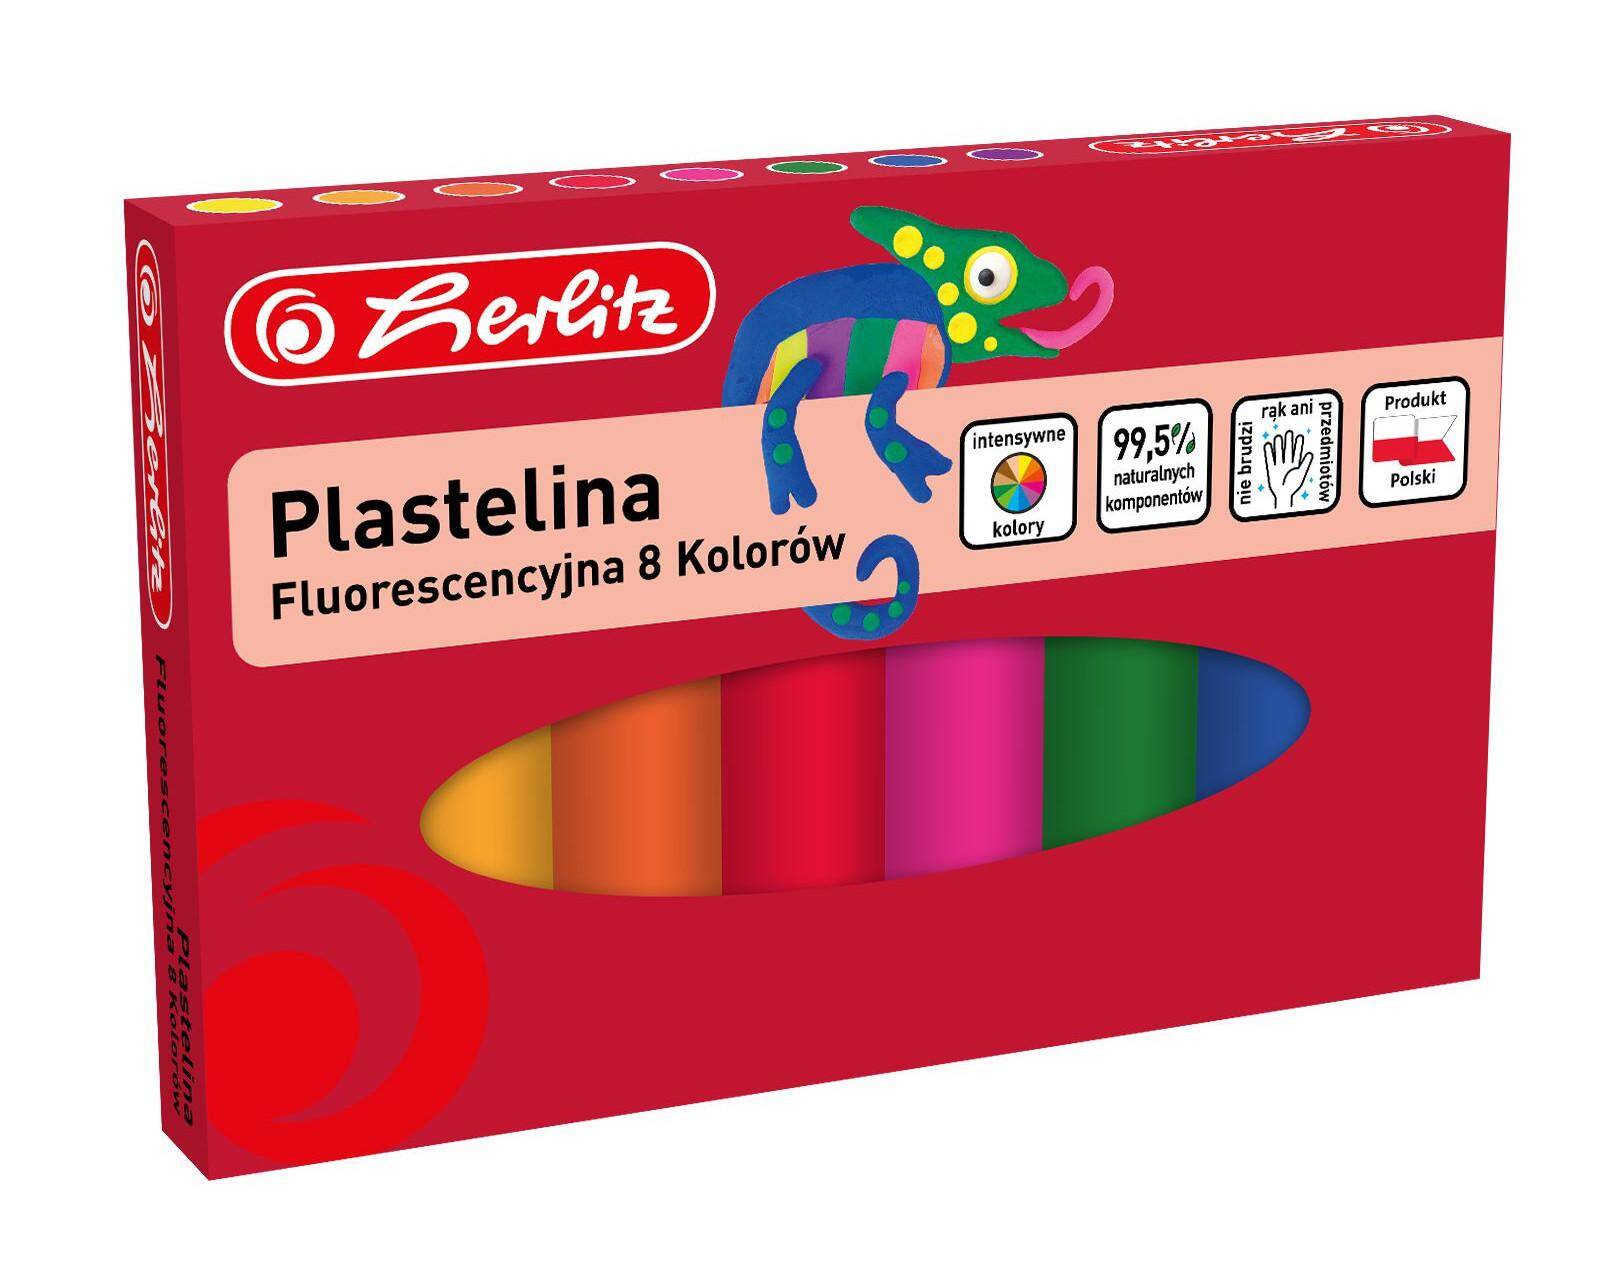 Plastelina fluorescencyjna 8 kolorów